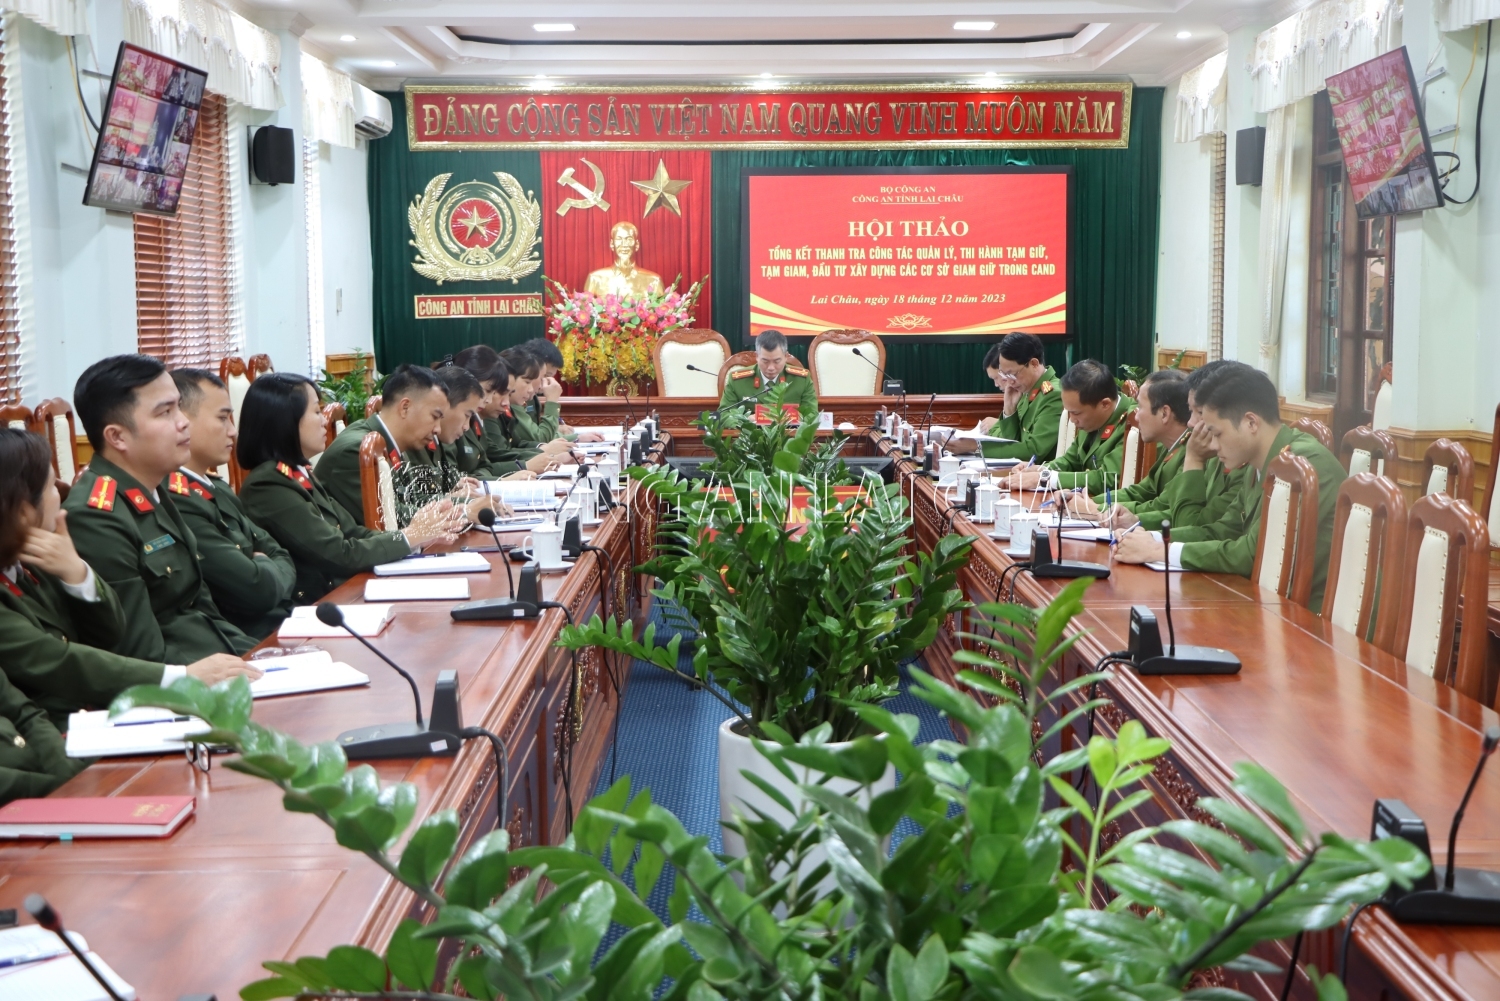 Đại tá Nguyễn Tuấn Hưng - Phó giám đốc Công an tỉnh dự Hội thảo tại điểm cầu Công an tỉnh